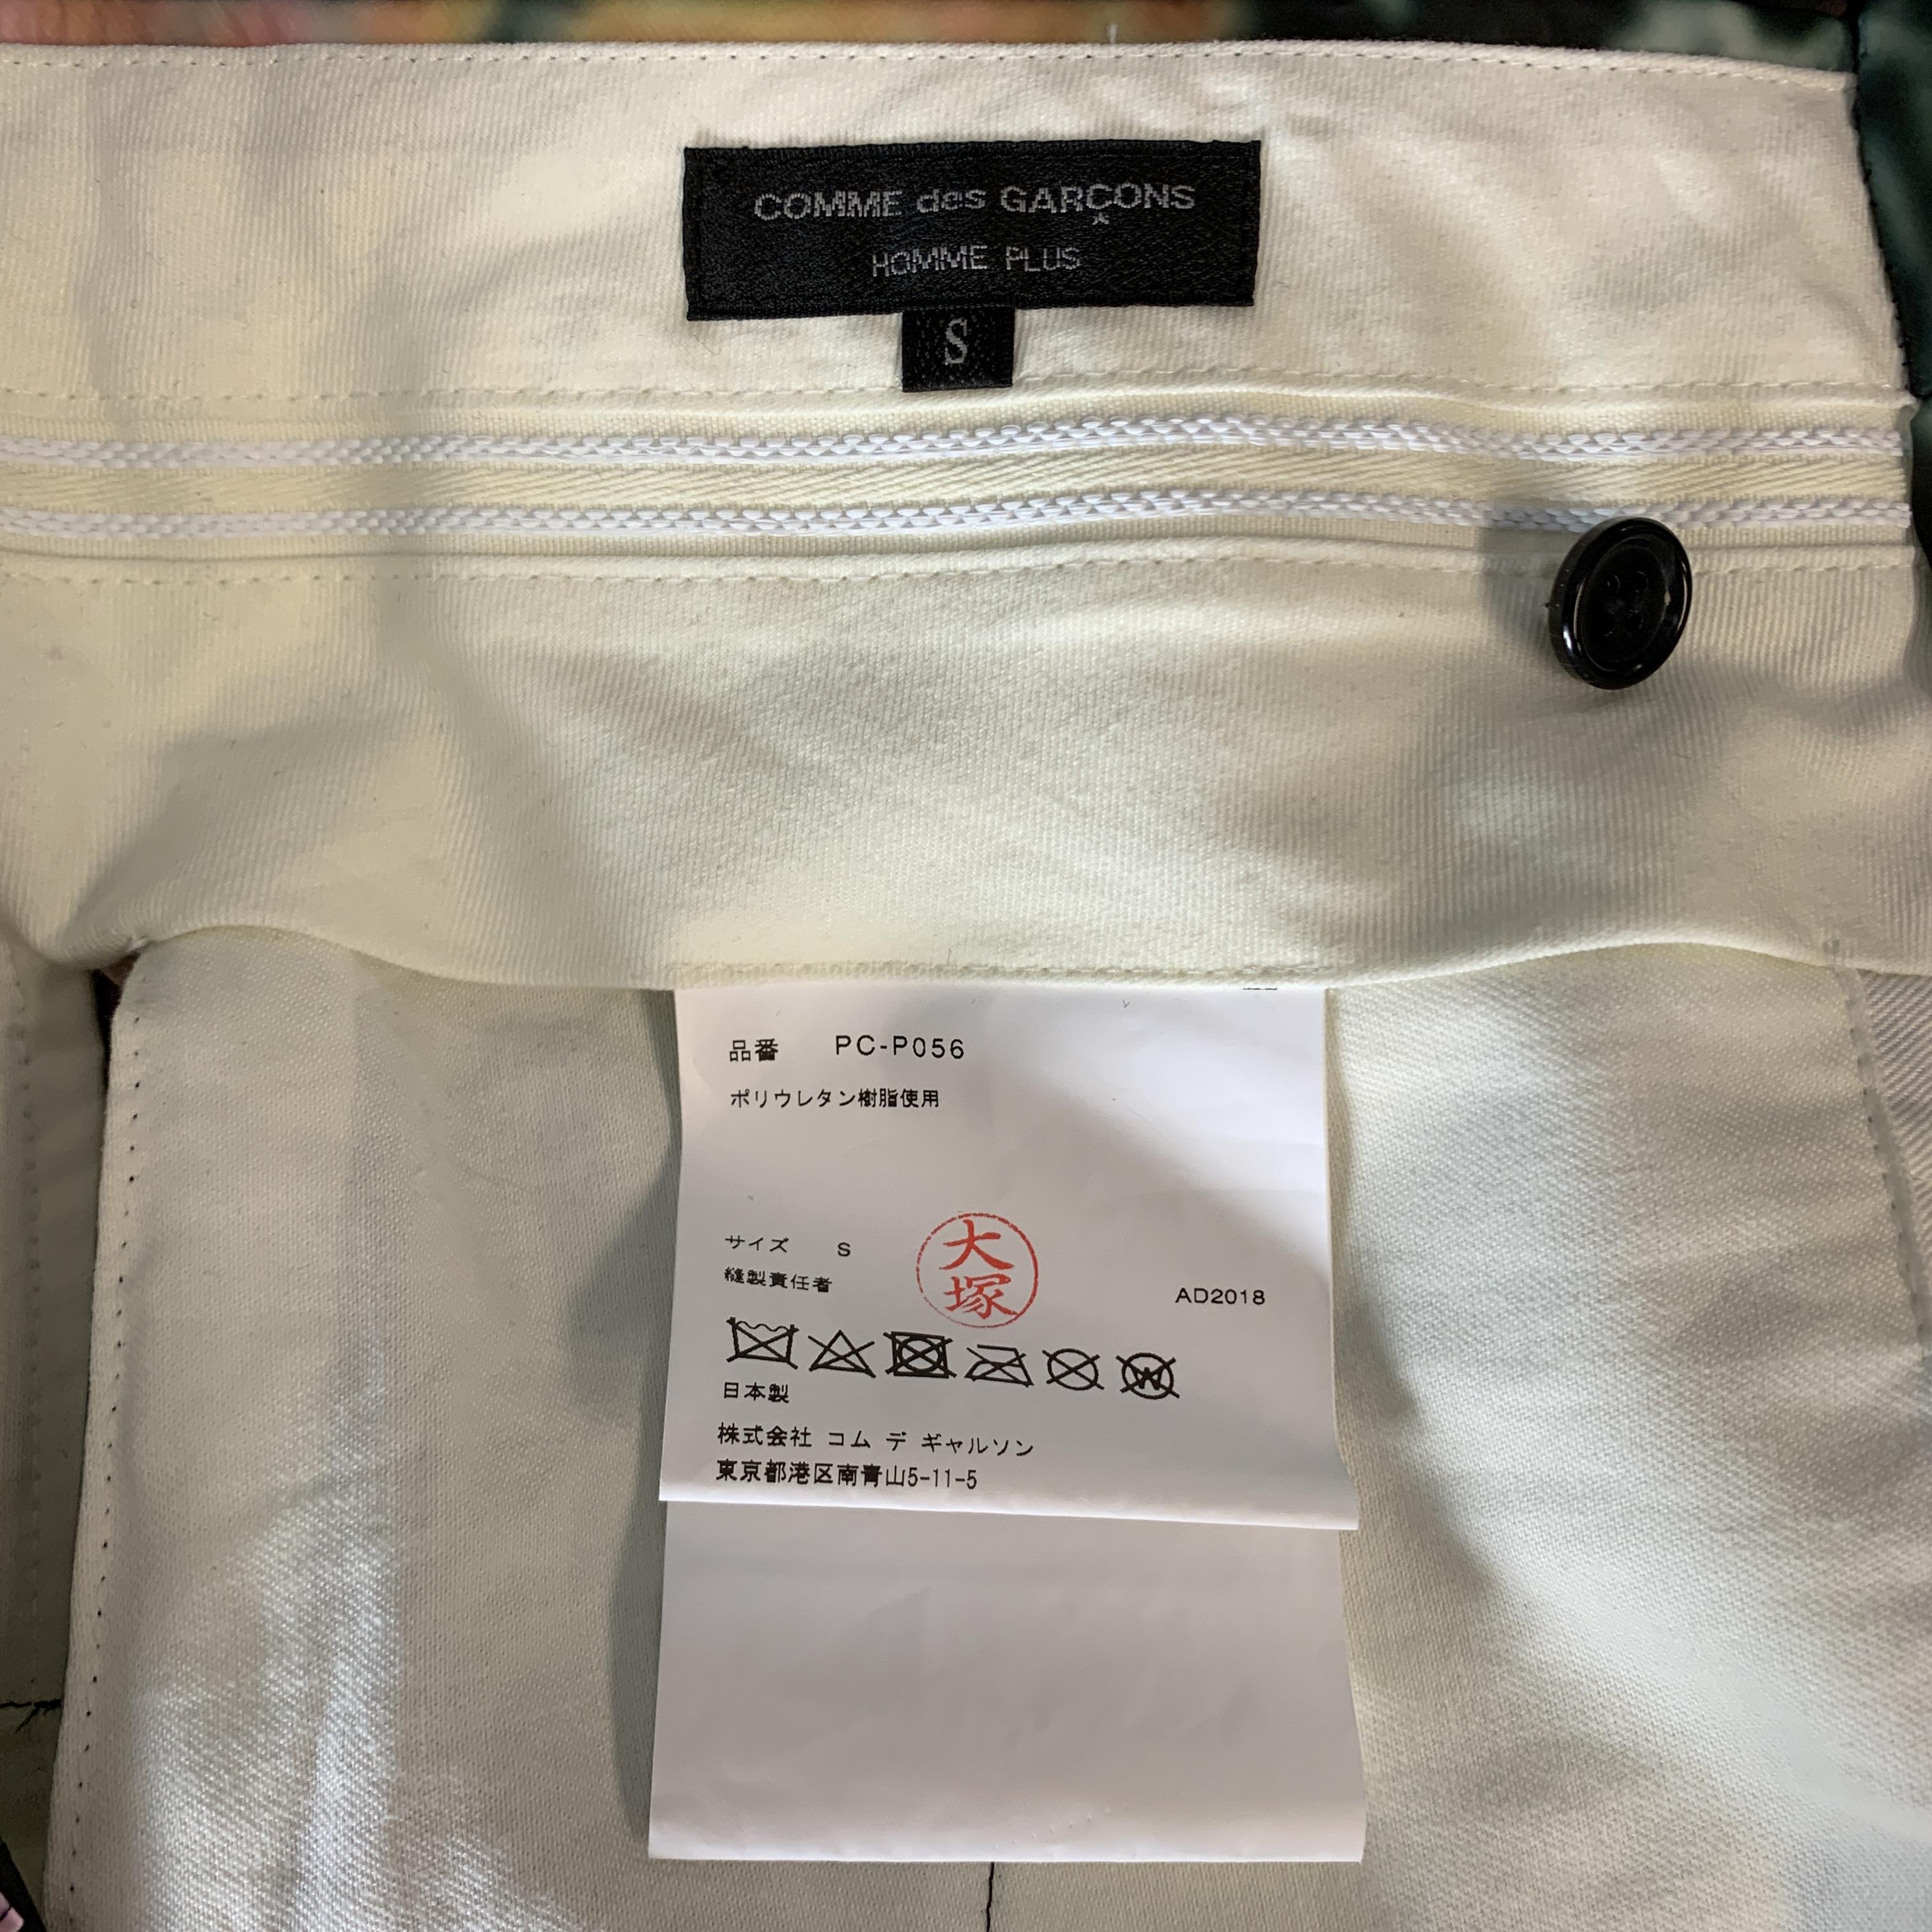 Men's COMME des GARCONS HOMME PLUS Size S Black & Green Marbled Floral PVC Shorts